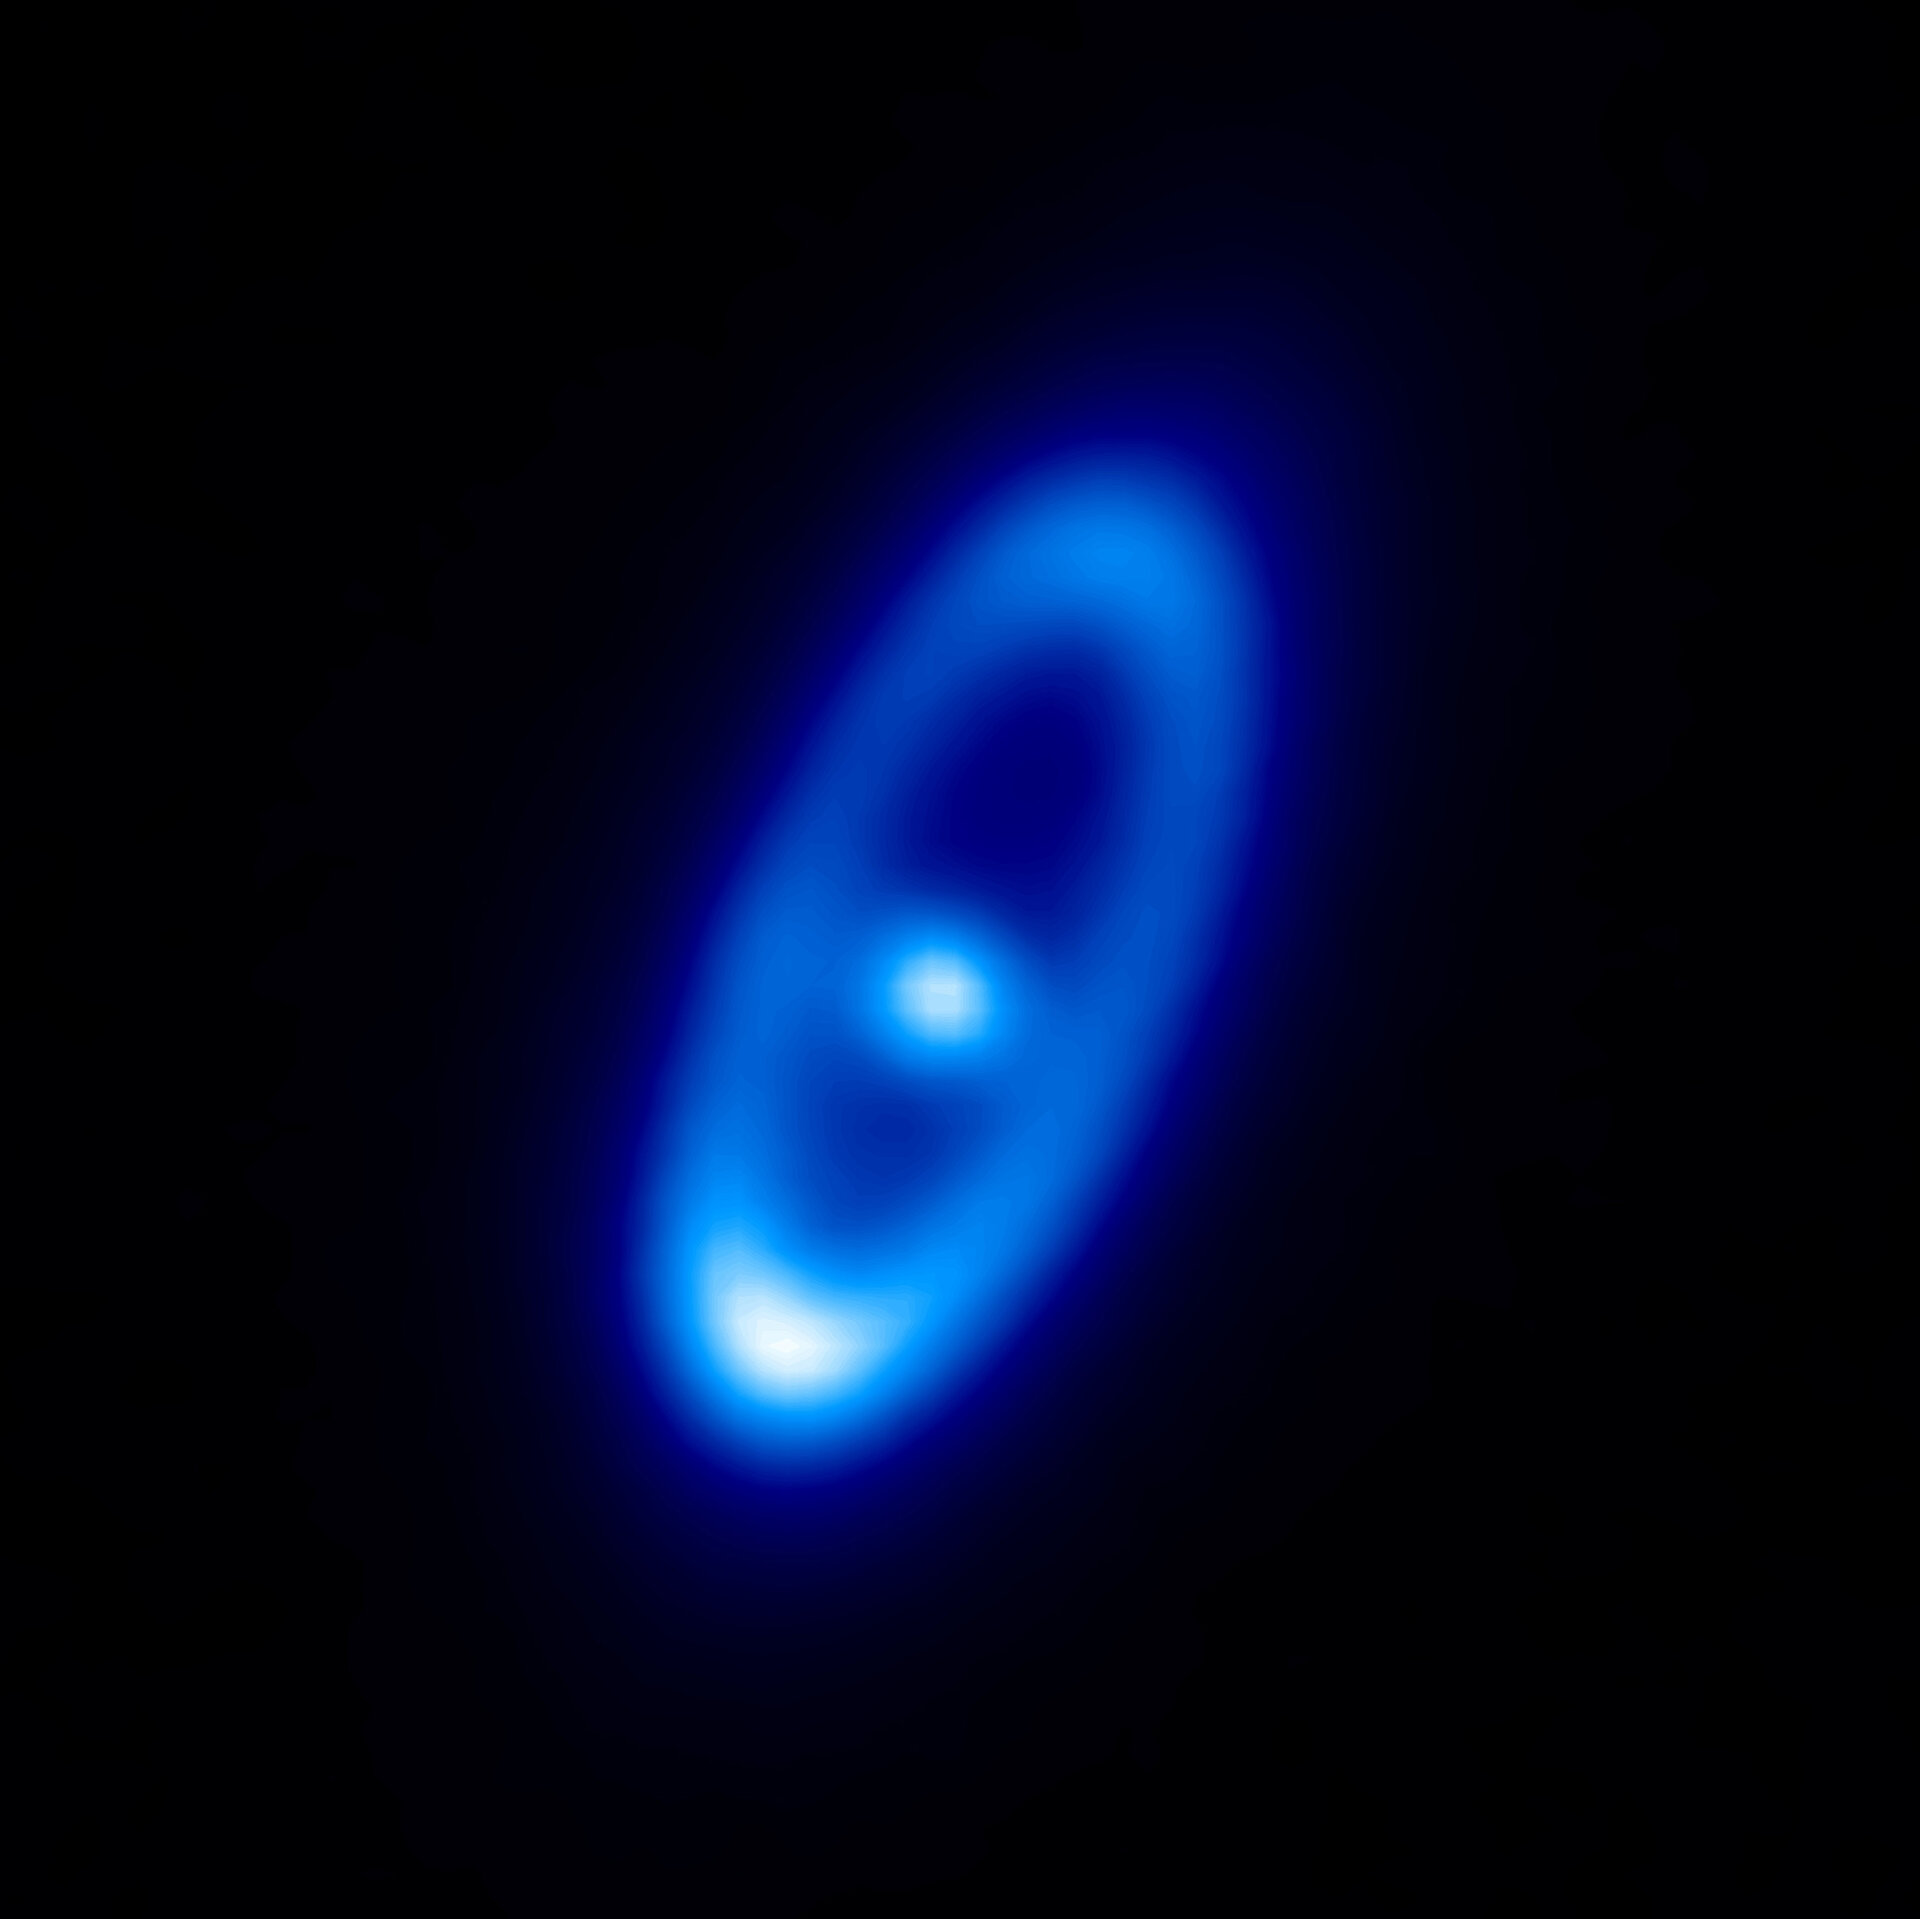 Imagem da estrela Fomalhaut, captada pelo Herschel